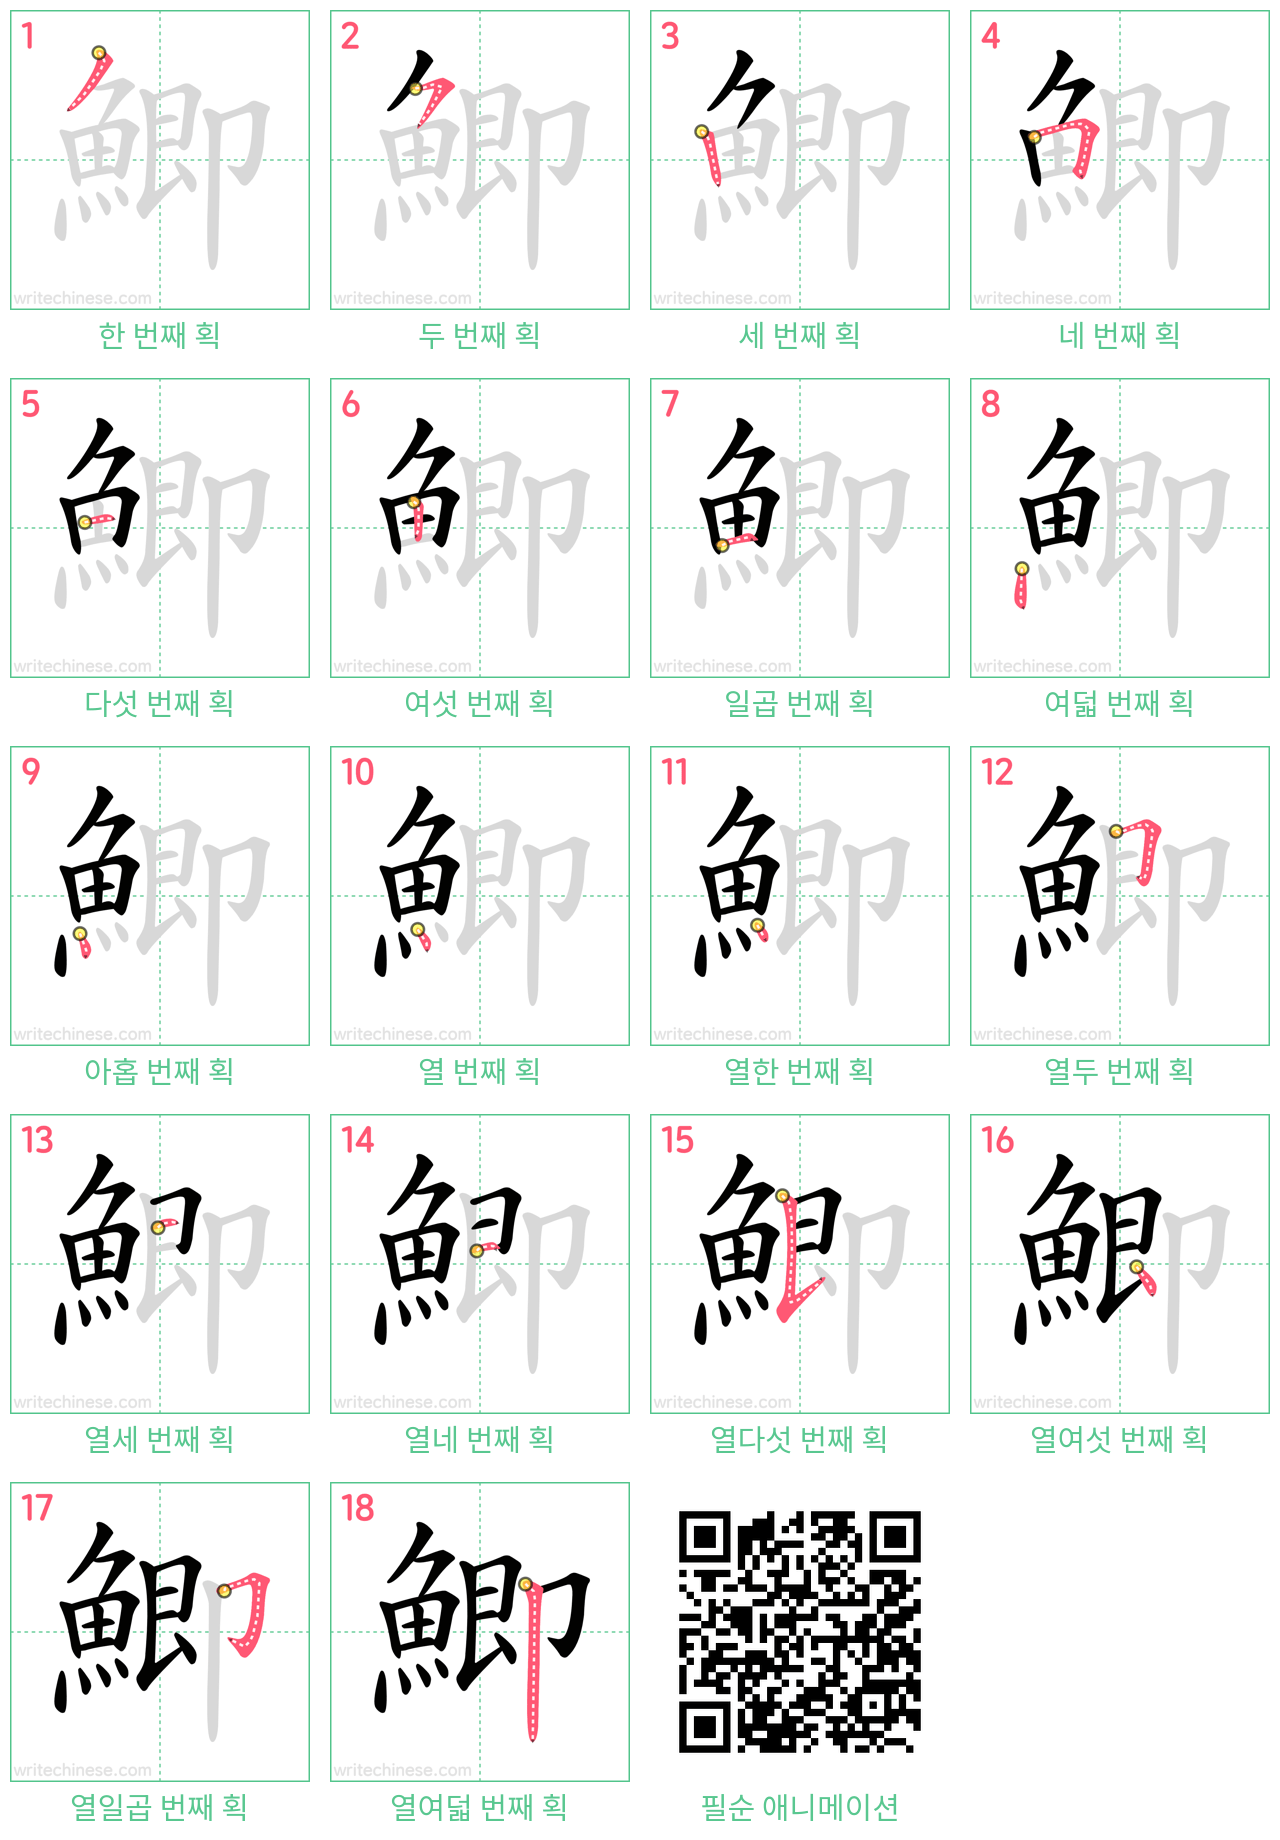 鯽 step-by-step stroke order diagrams